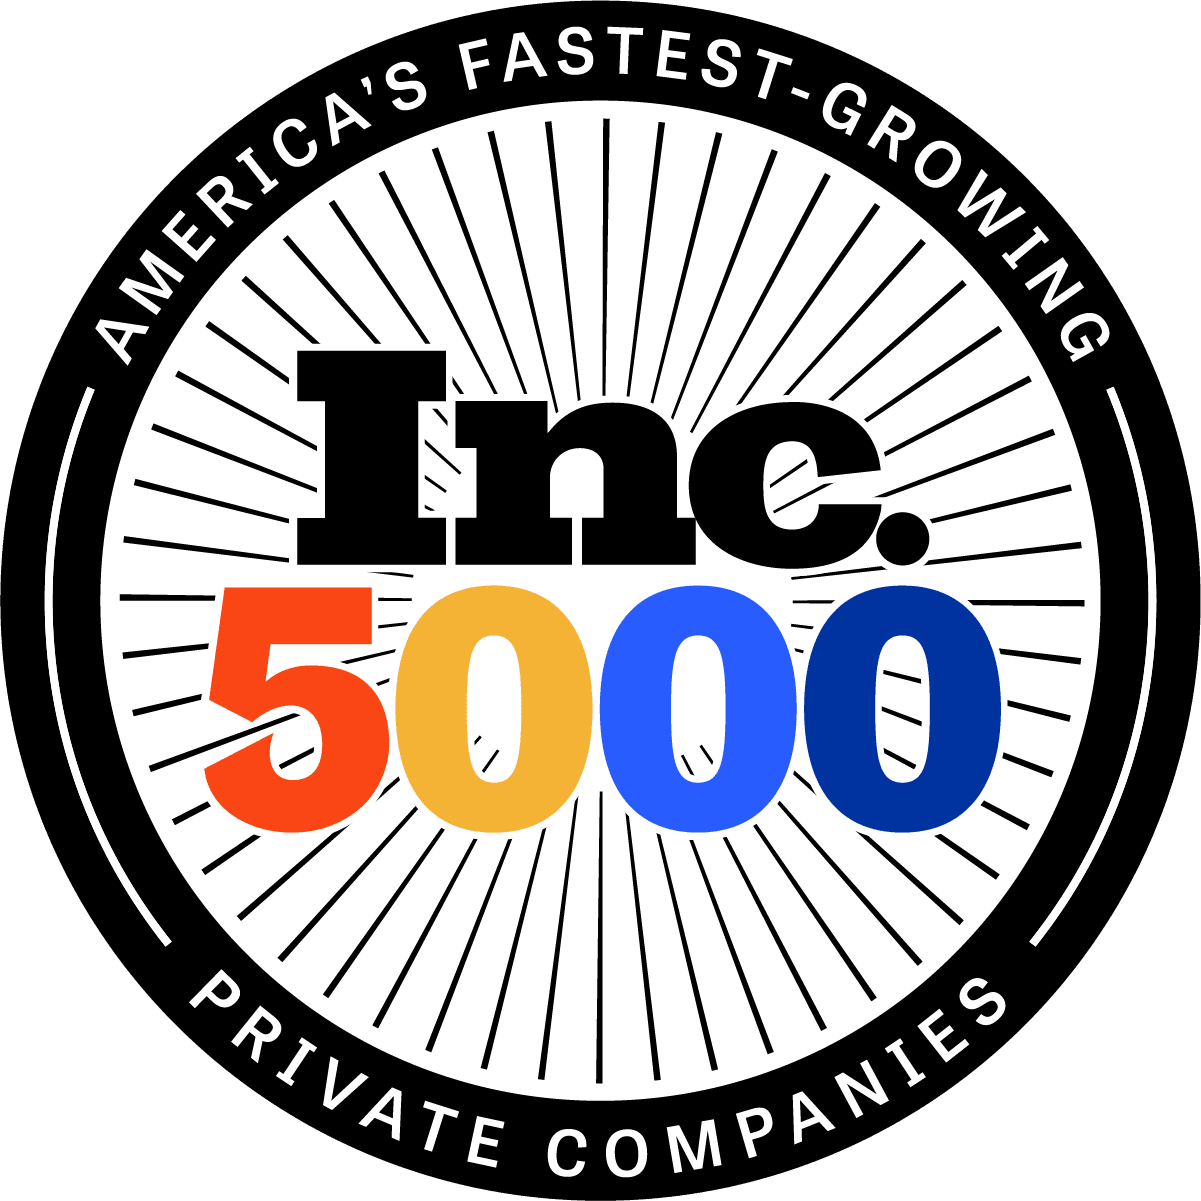 Techvera Ranks on the 2021 Inc. 5000 List